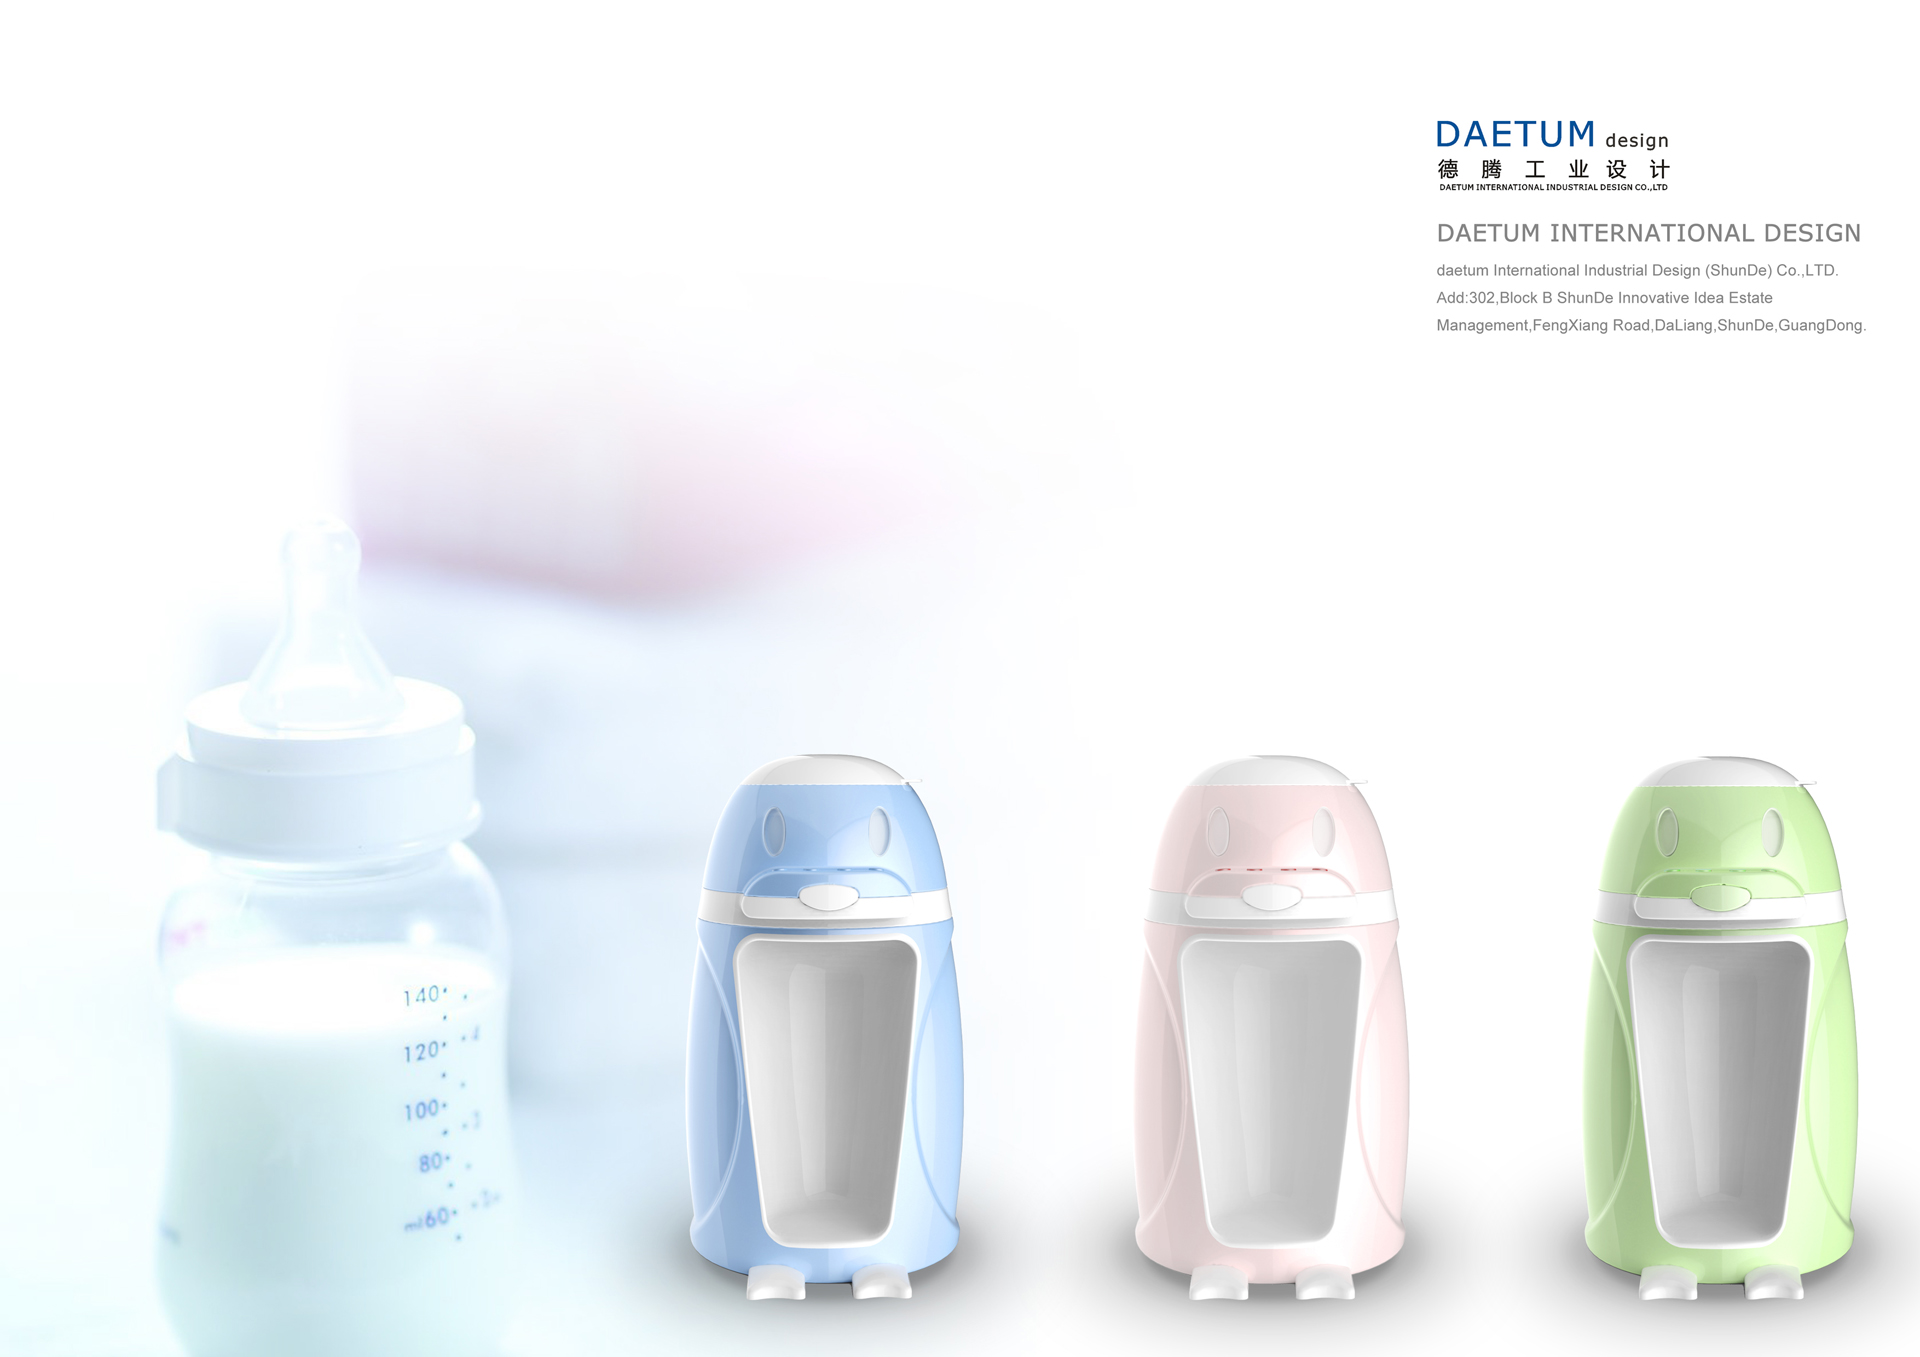 婴儿冲奶机外观设计,婴儿冲奶机产品设计,婴儿冲奶机设计